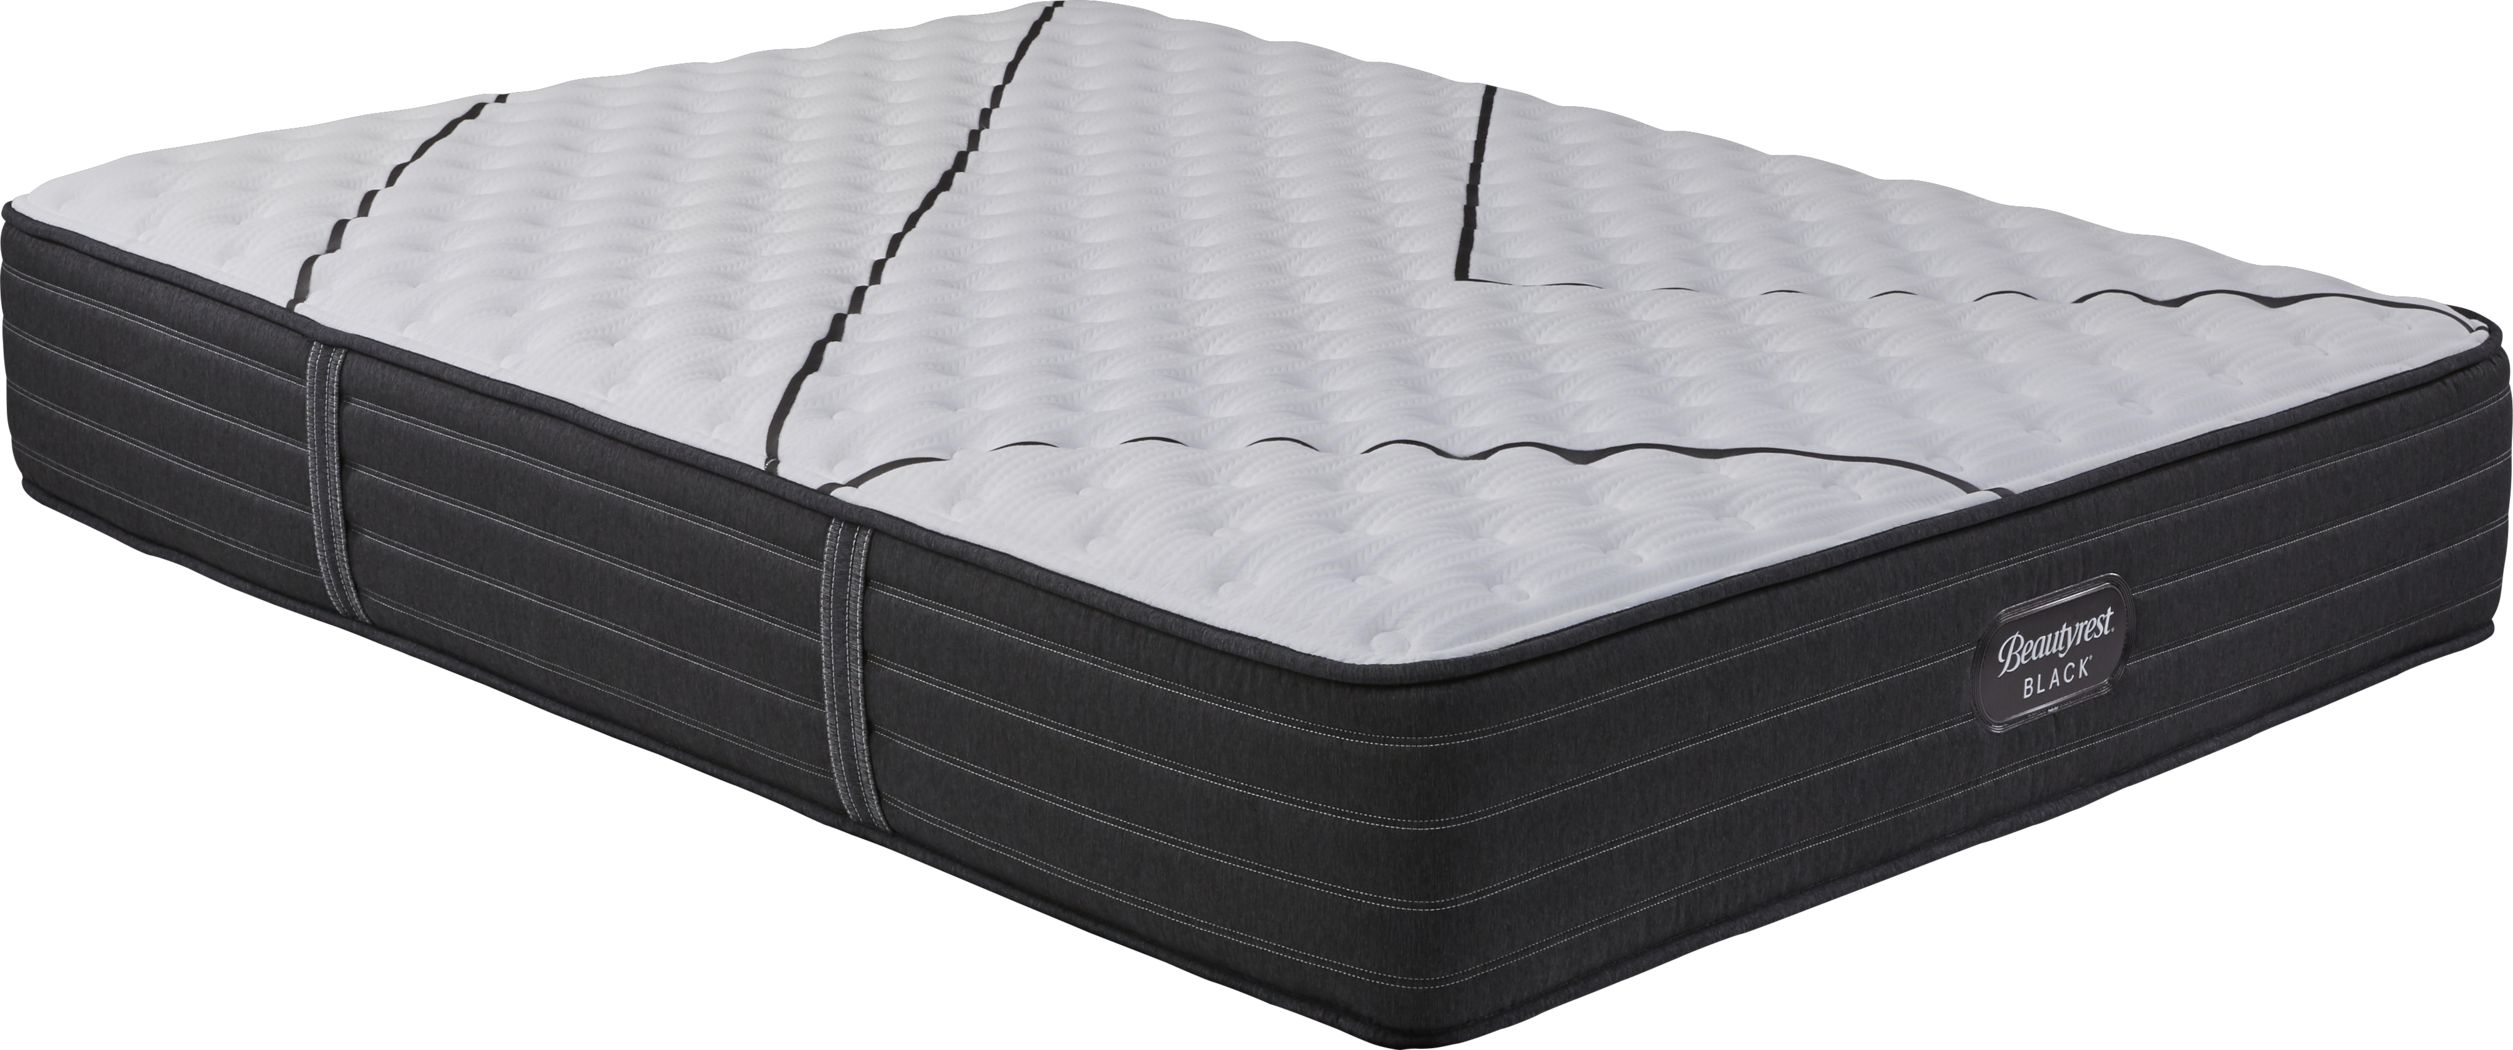 brantley firm queen mattress